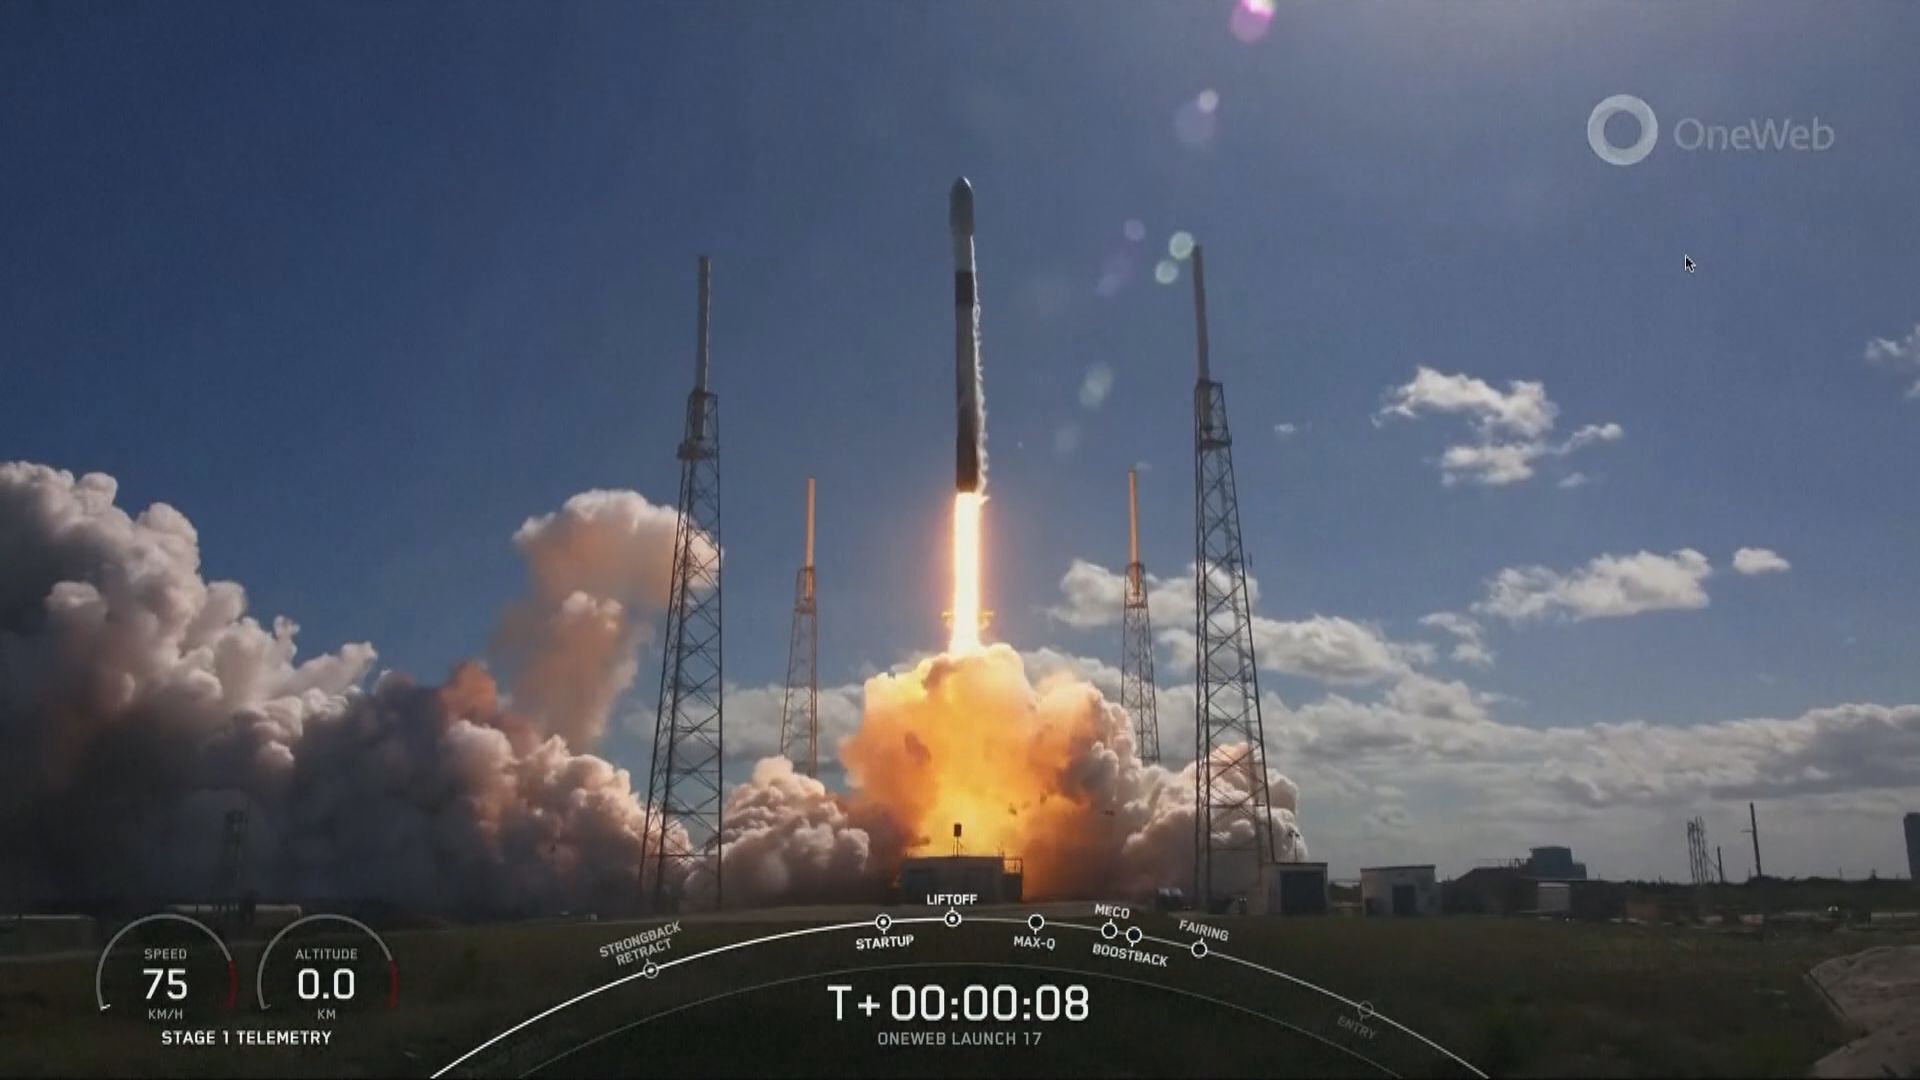 報道指SpaceX協助美國建造間諜衛星網絡